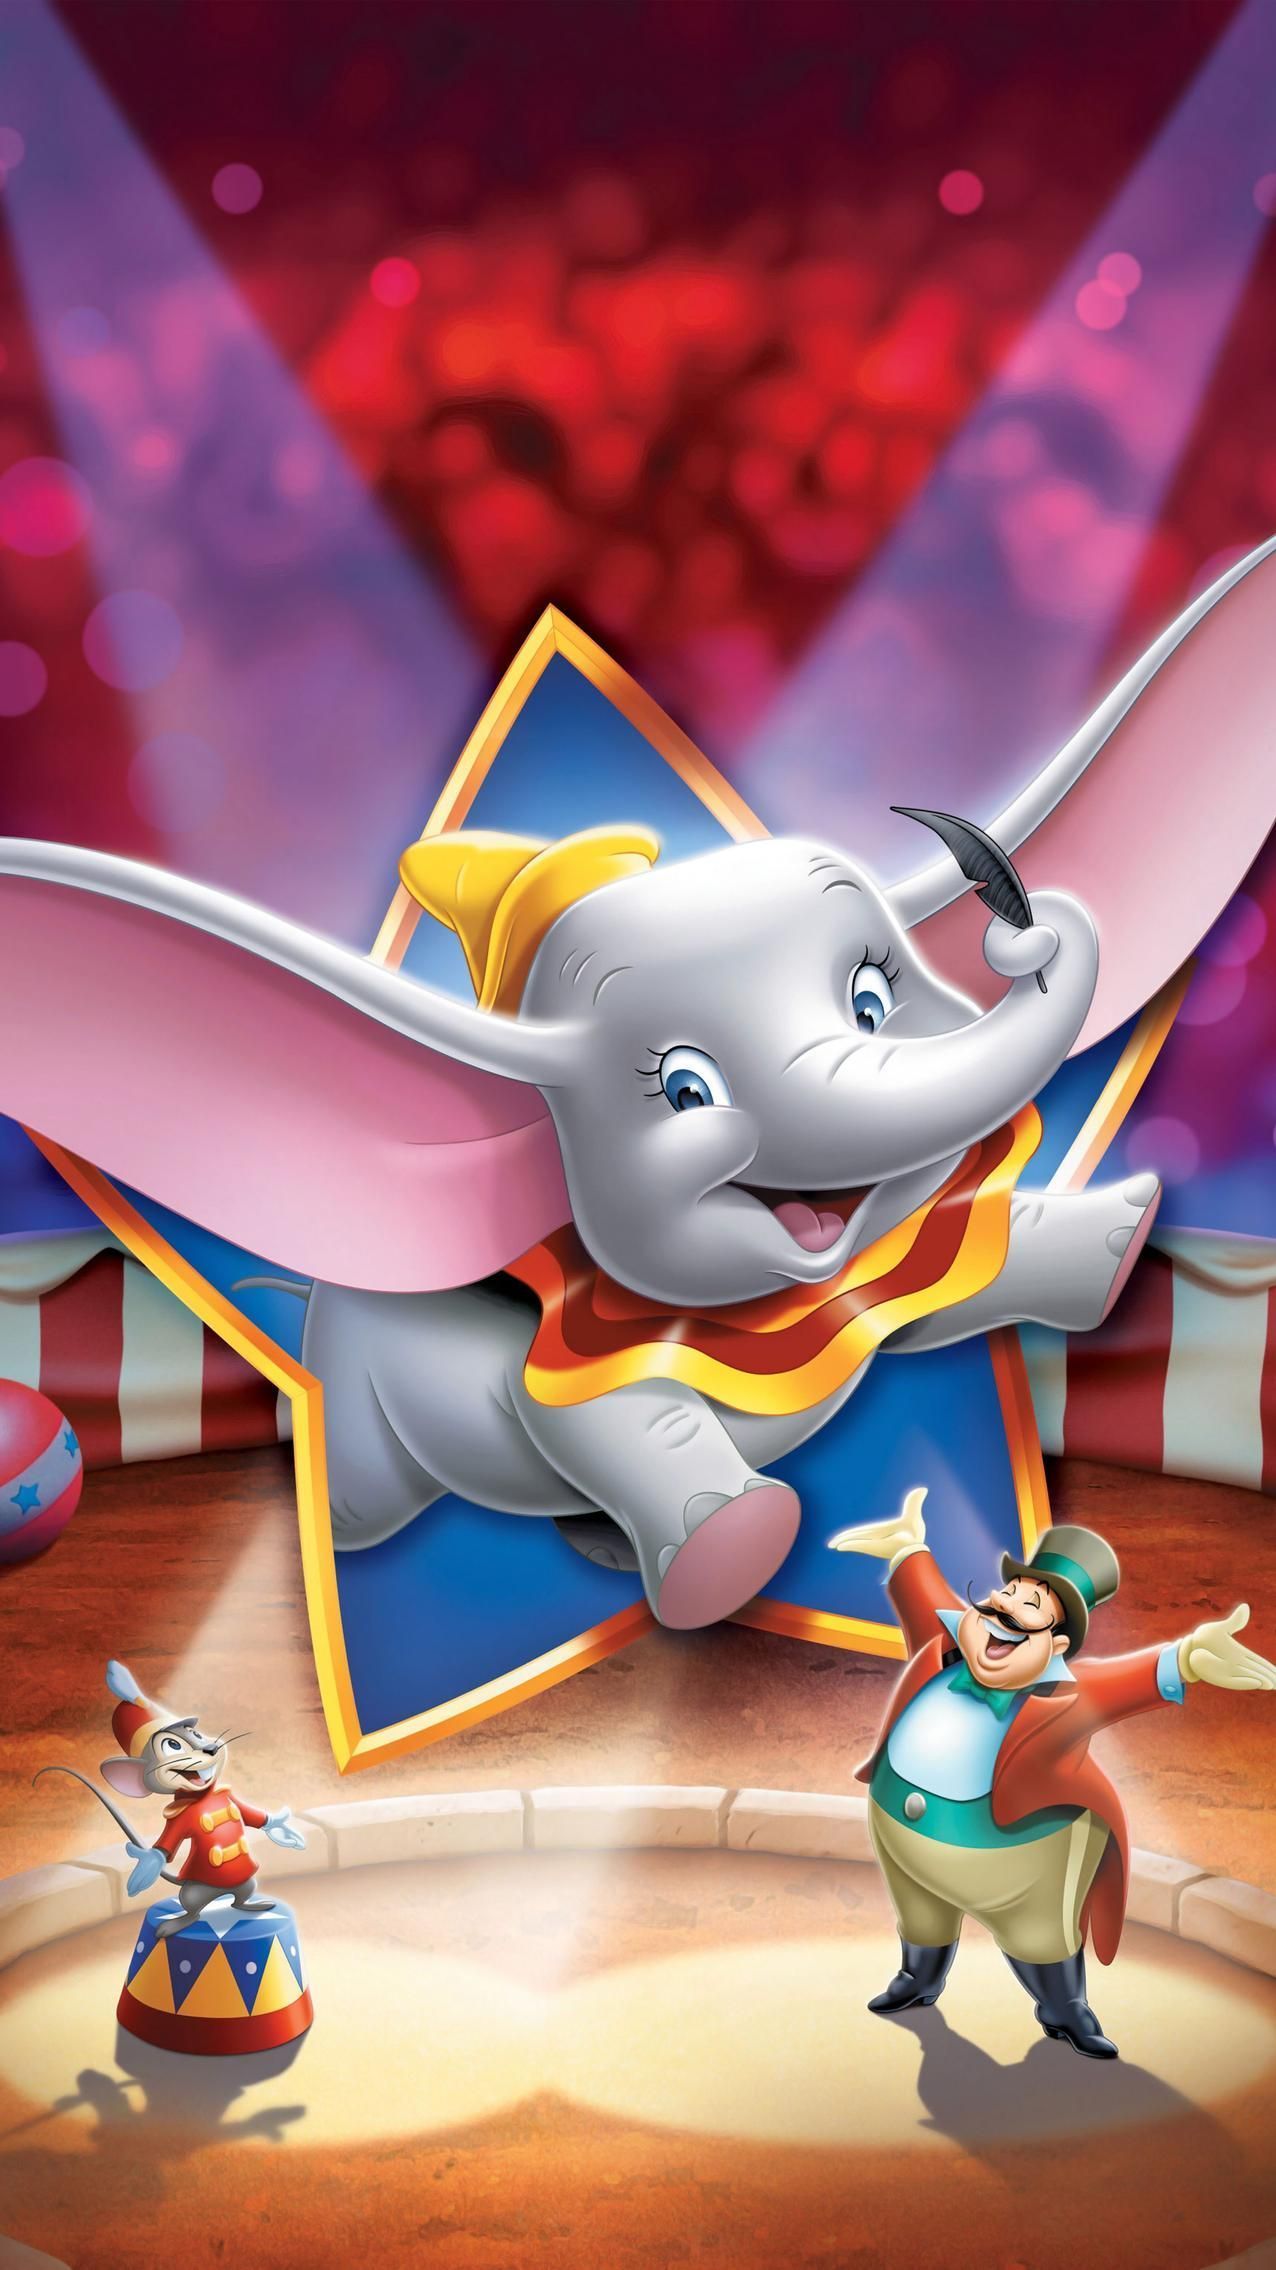 Dumbo Circus Wallpaper Free Dumbo Circus Background